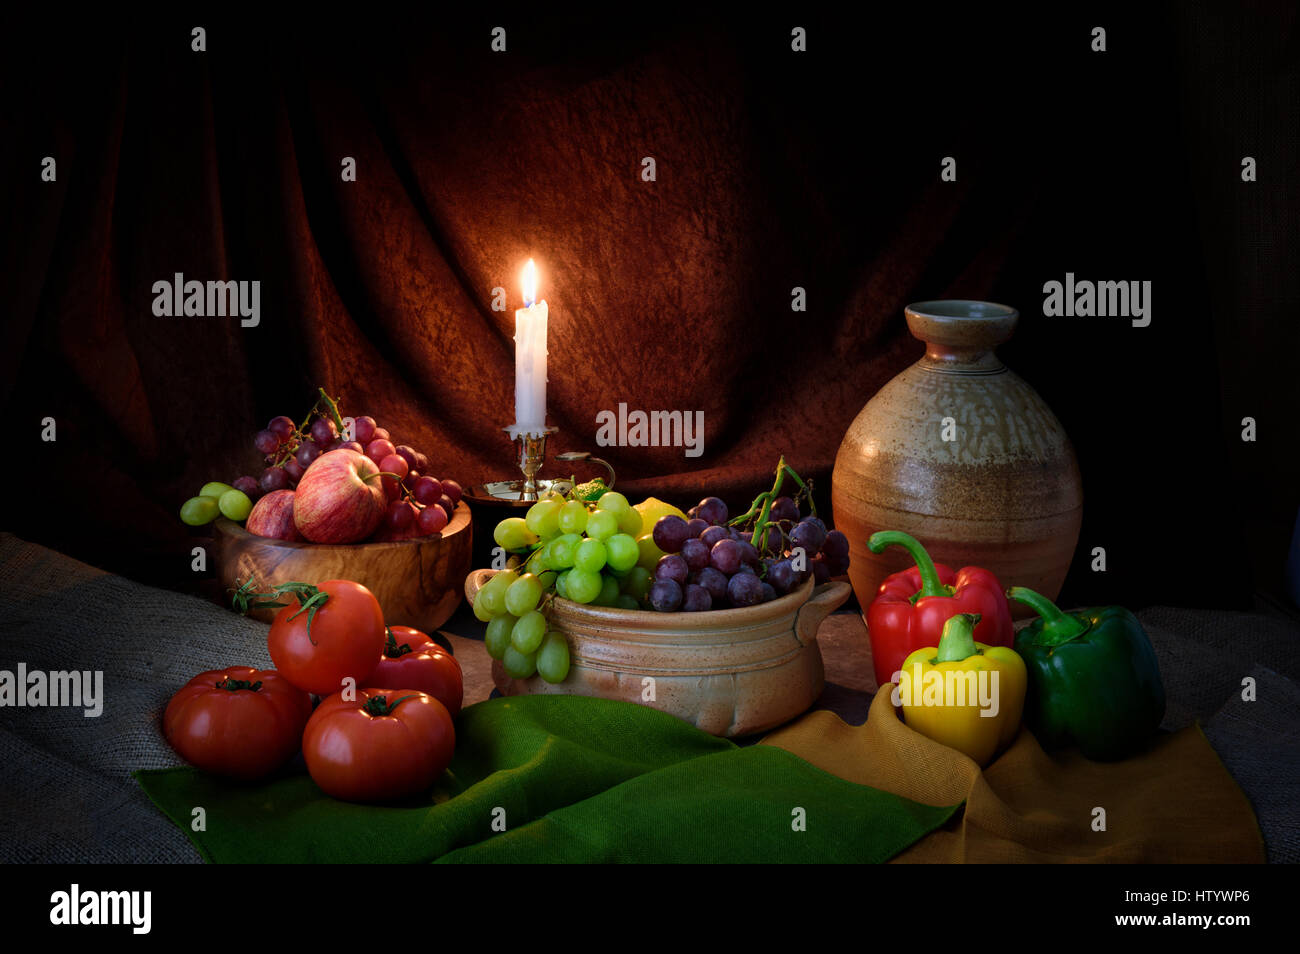 Candela accesa ancora vita fotografia di frutta e verdura nello stile del vecchio maestro di mele uva pomodori a lume di candela e rustico in ceramica Foto Stock